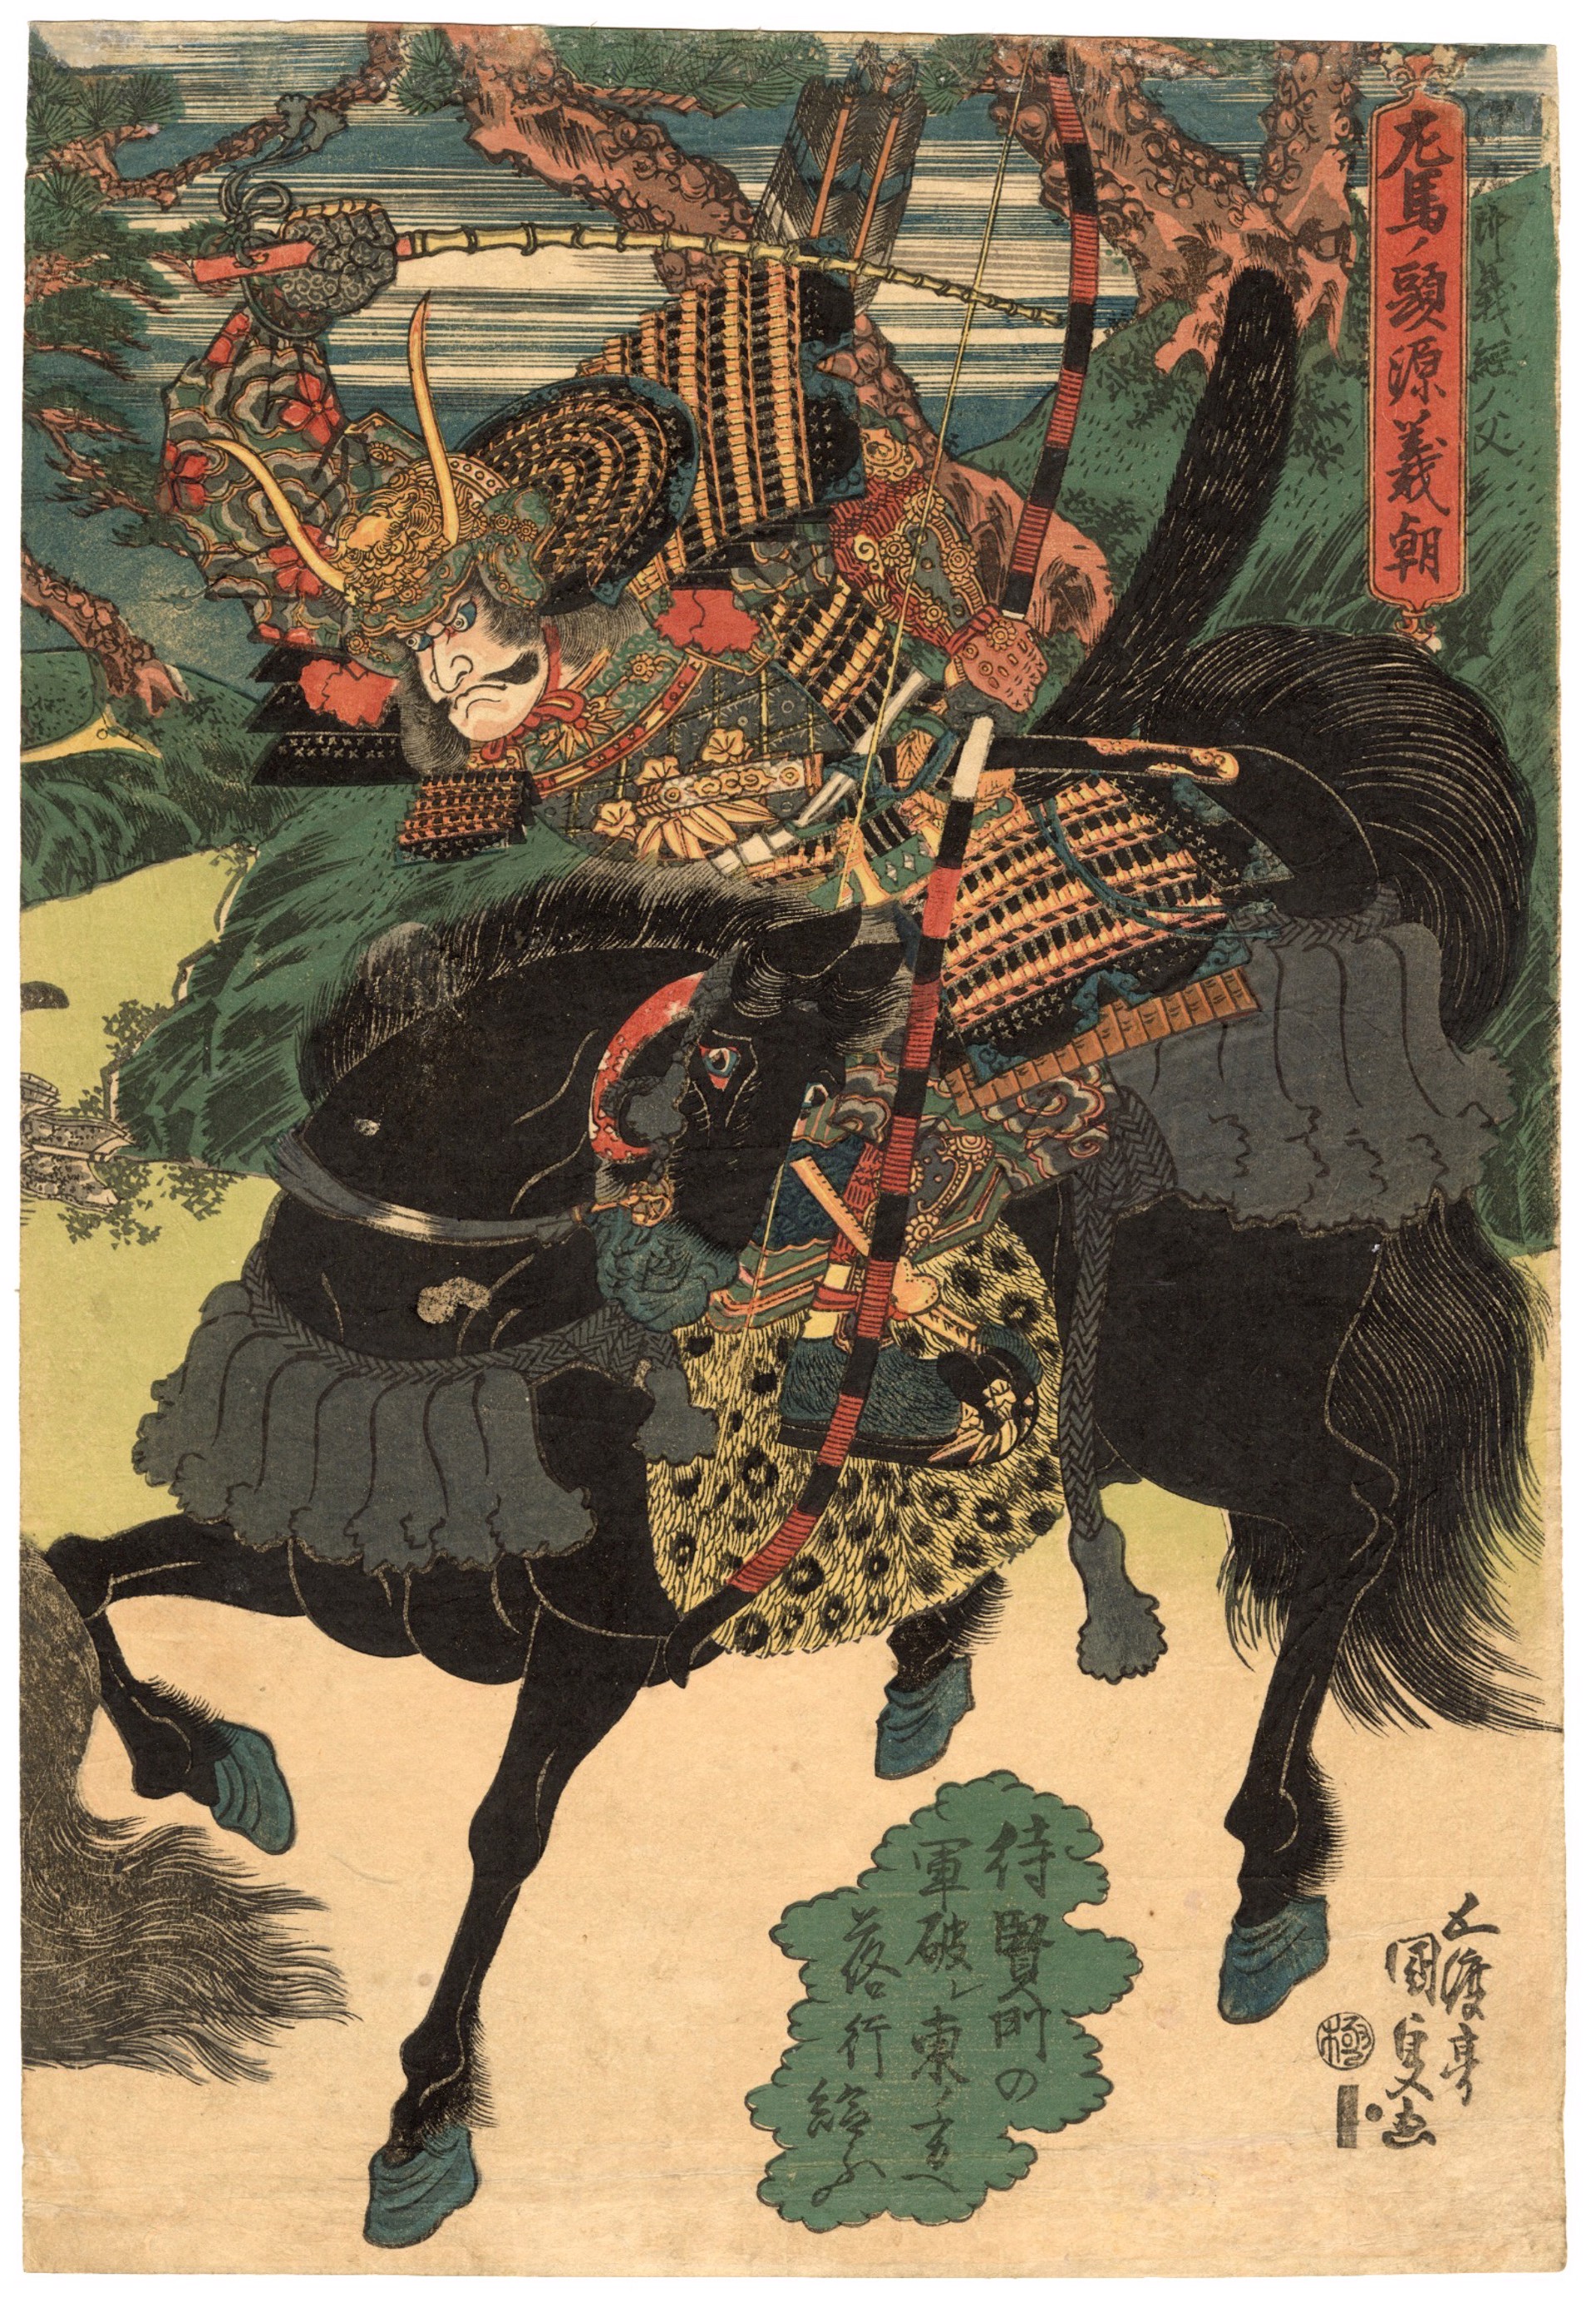 Minamoto no Yoshitomo (R) Battles Fujiwara no Nobuyori (L) by Kunisada